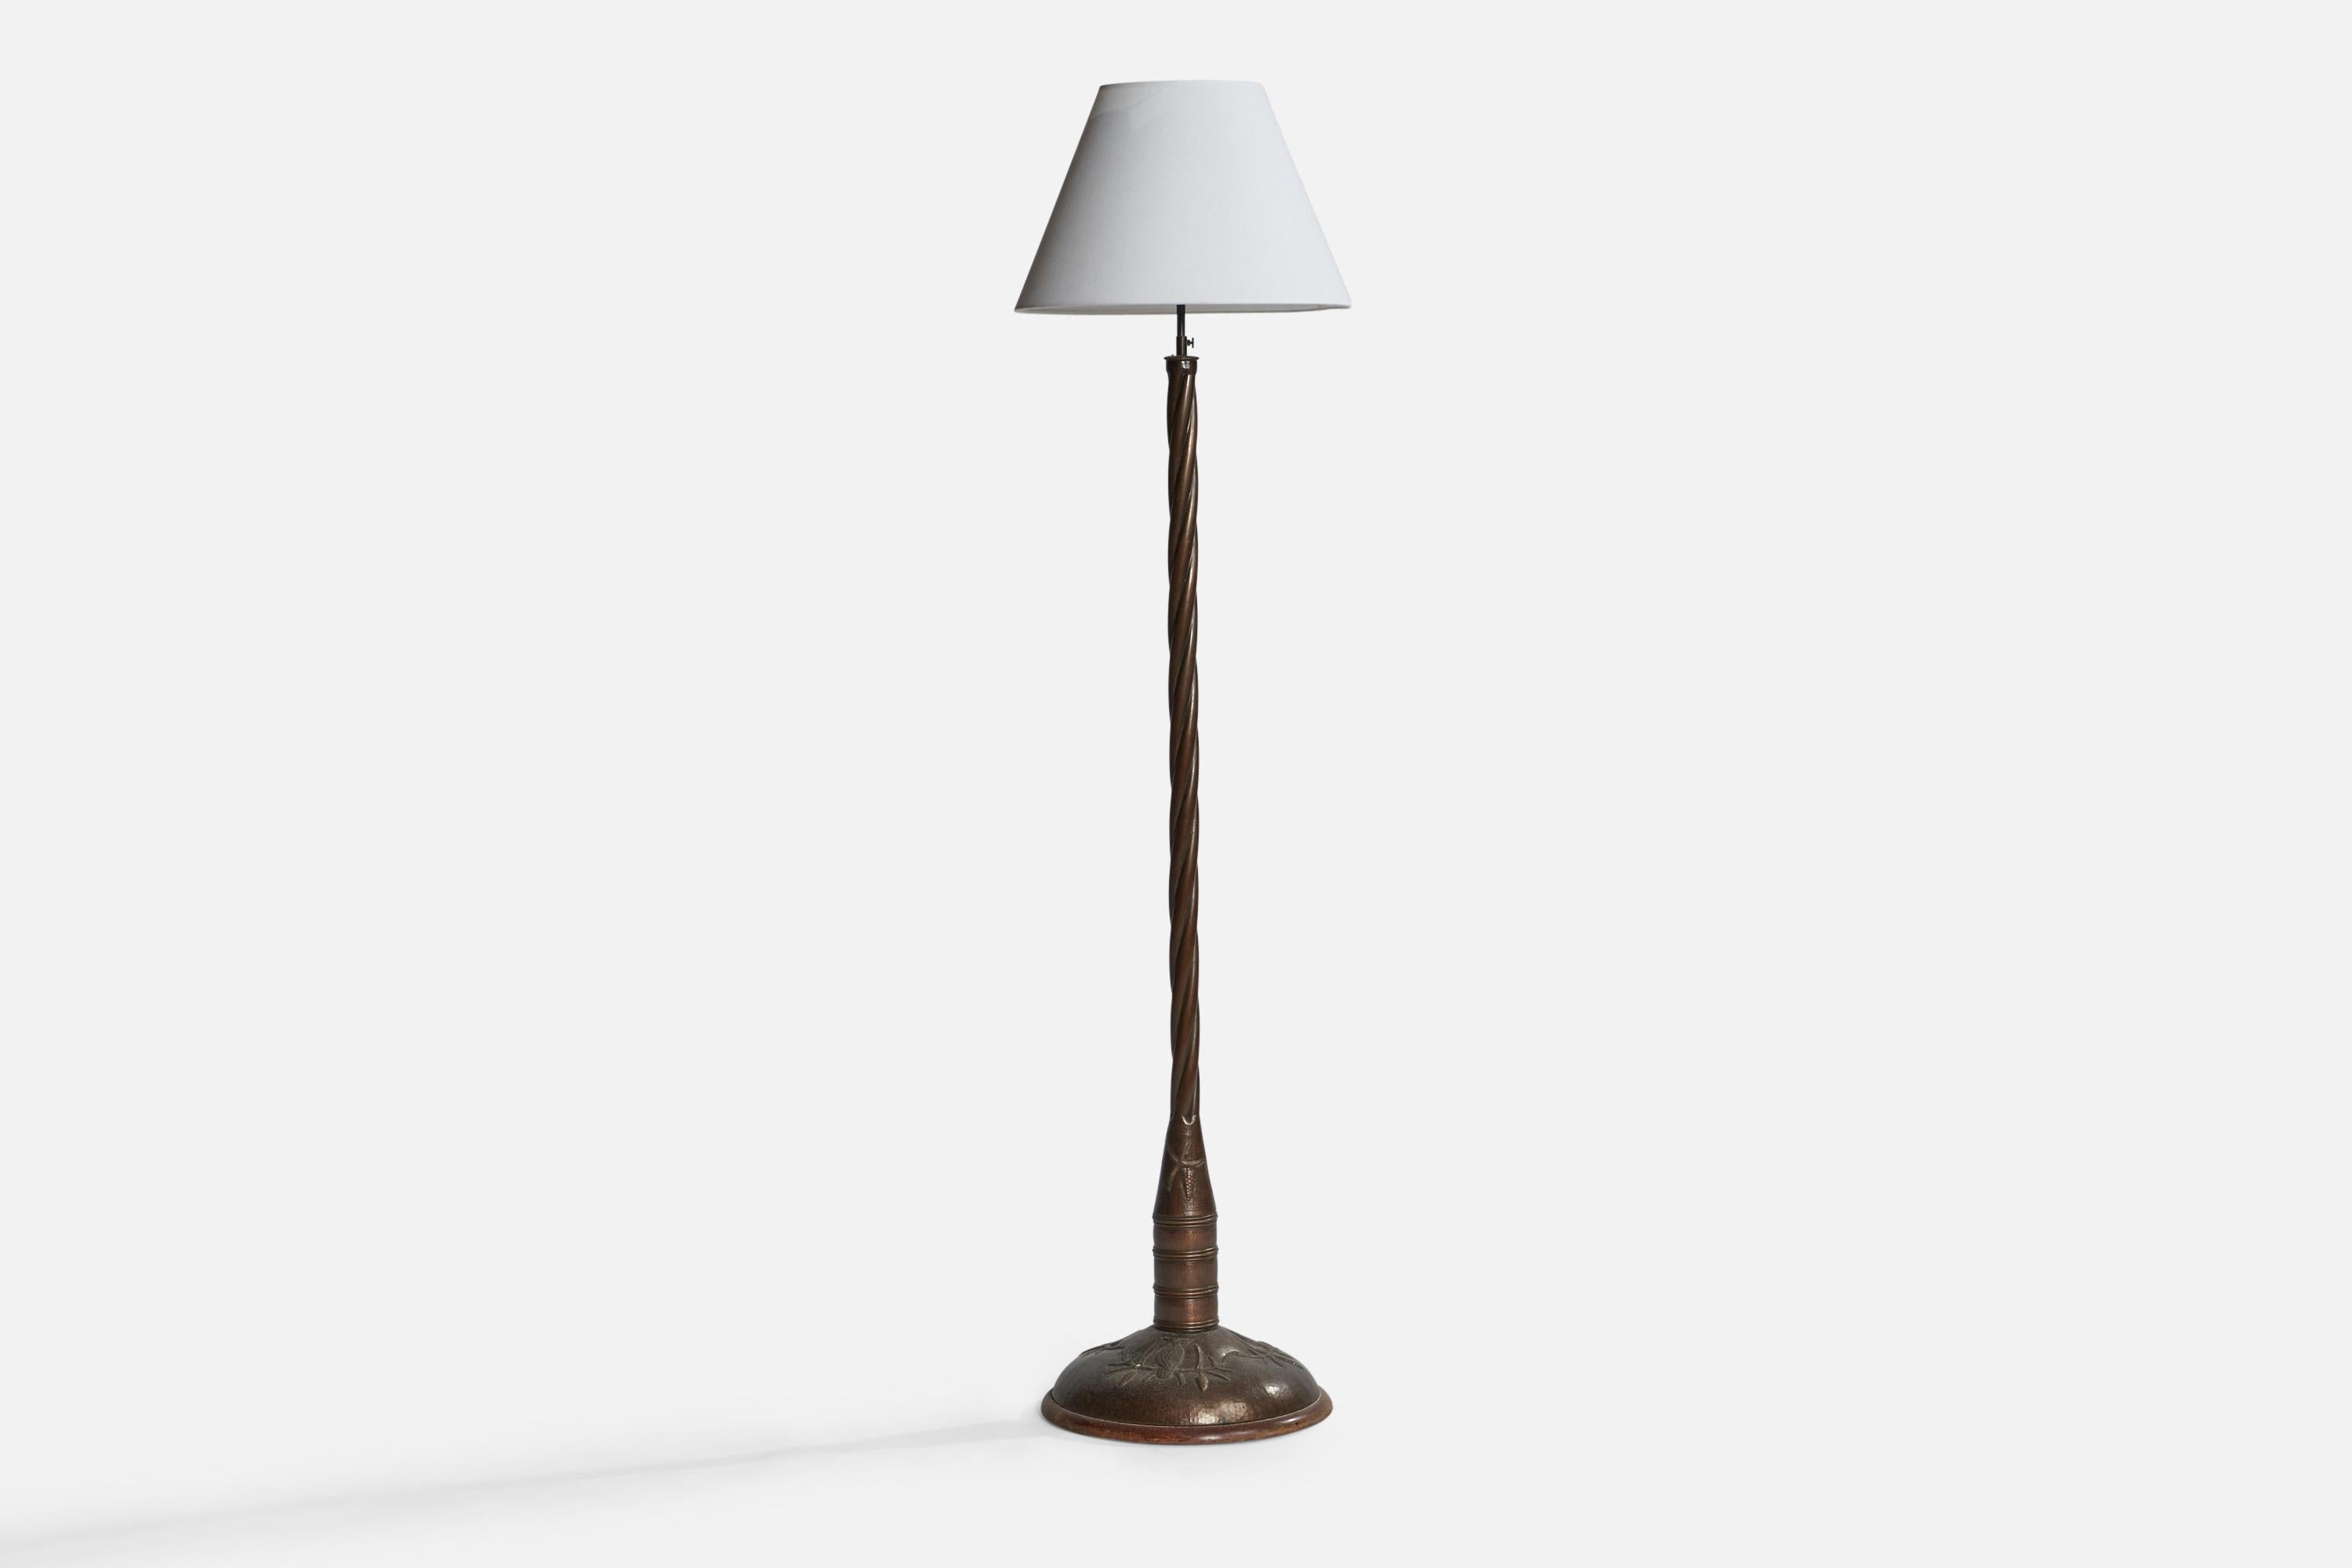 Ce grand lampadaire en cuivre et tissu a été conçu et produit en Suède dans les années 1920.

Dimensions globales (pouces) : 75.5